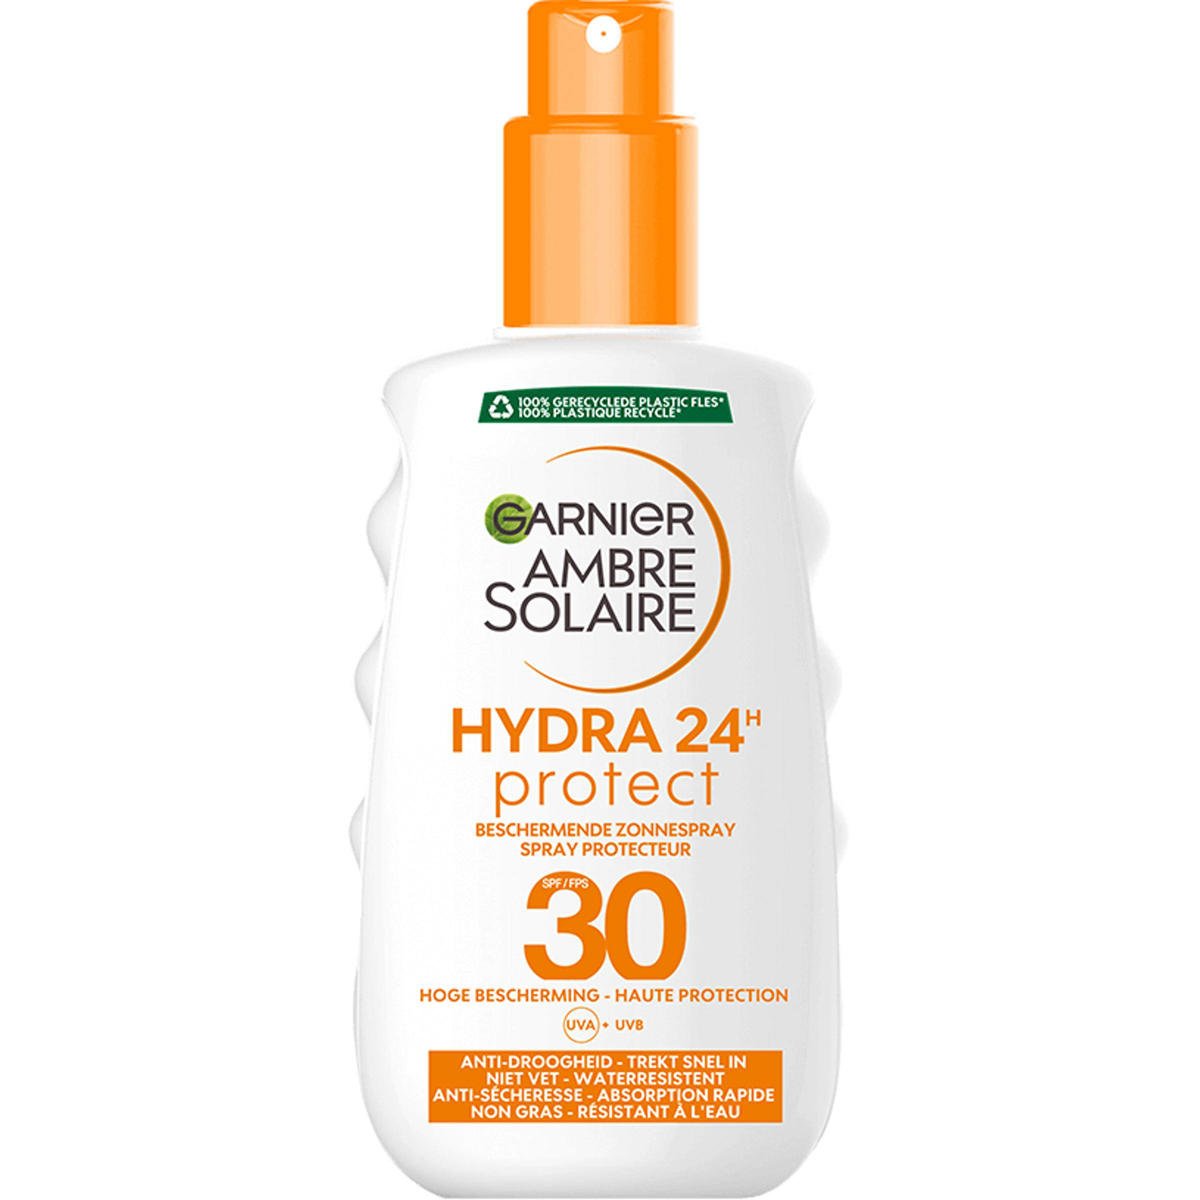 Garnier Solaire hydraterende zonnebrand spray met Karité Boter - SPF 30 - 200